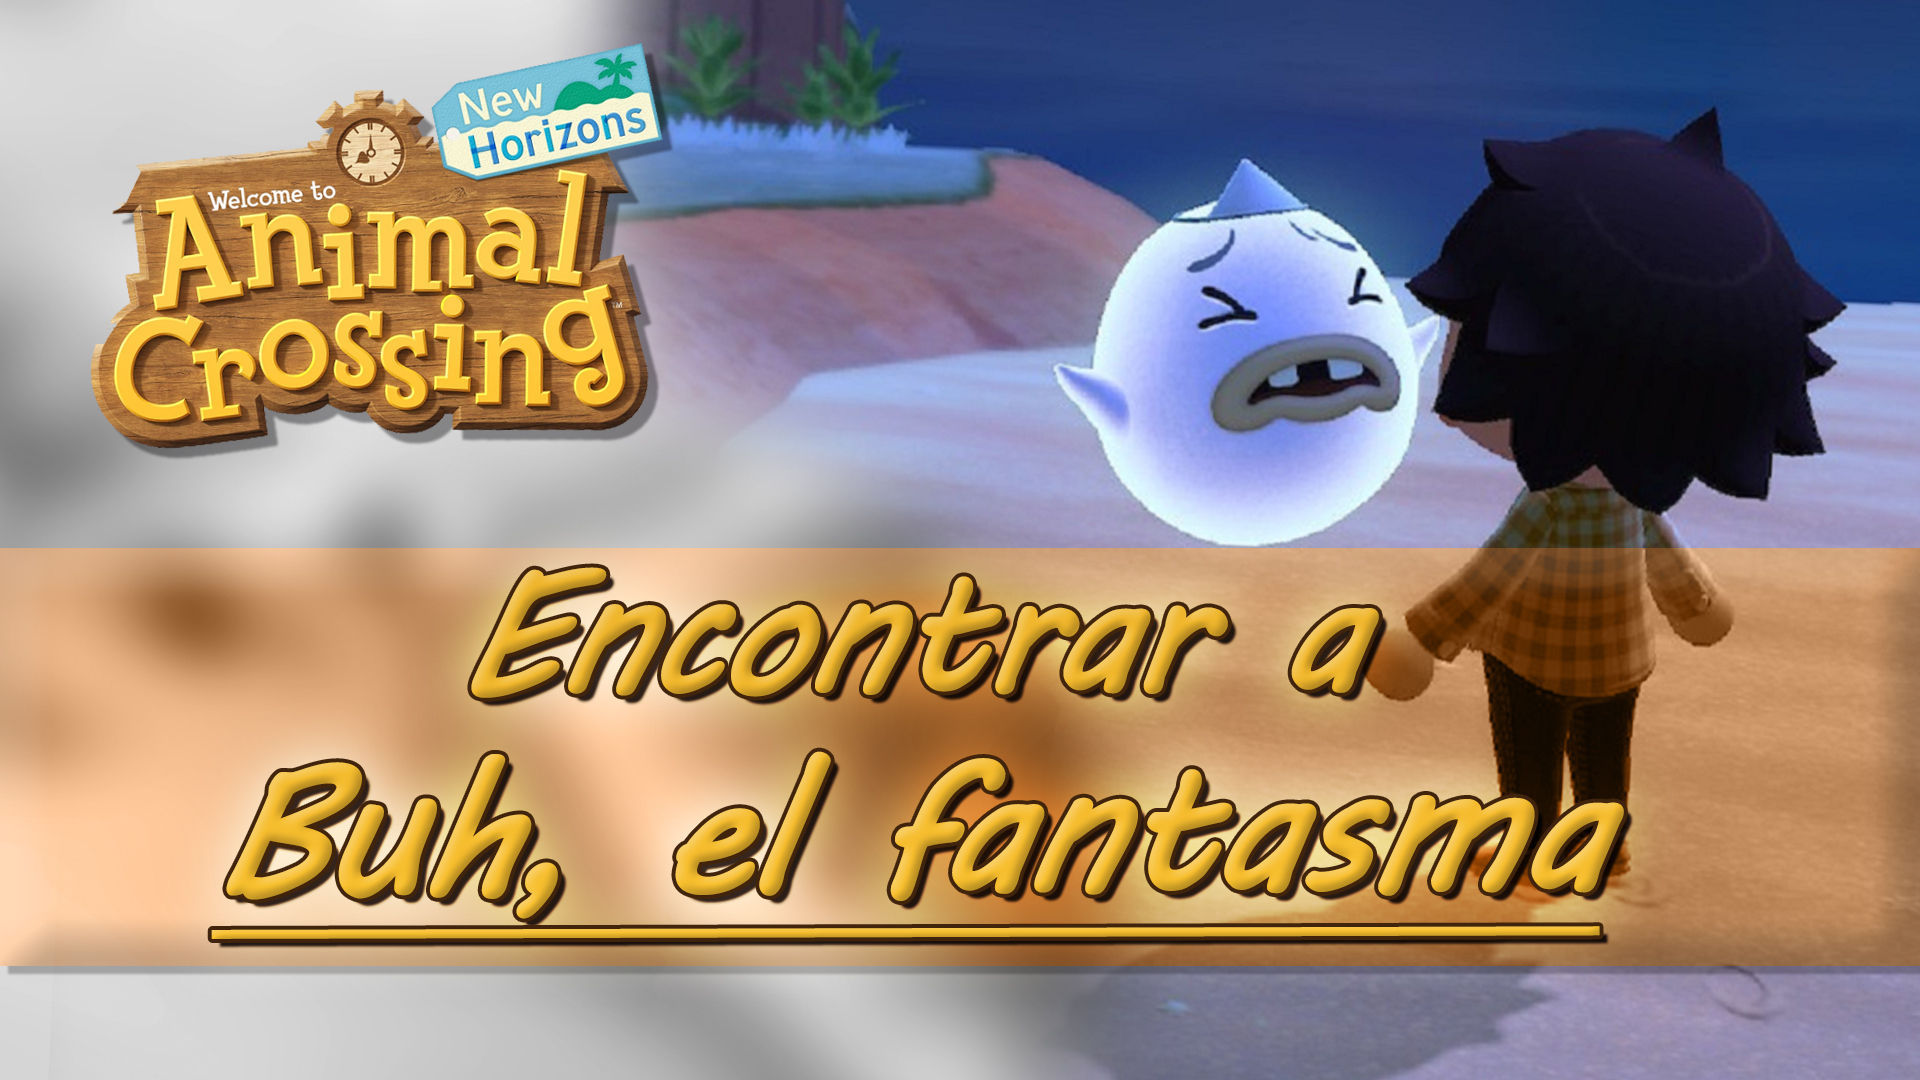 firma Negligencia Elasticidad Dónde encontrar al fantasma Buh en Animal Crossing: New Horizons?